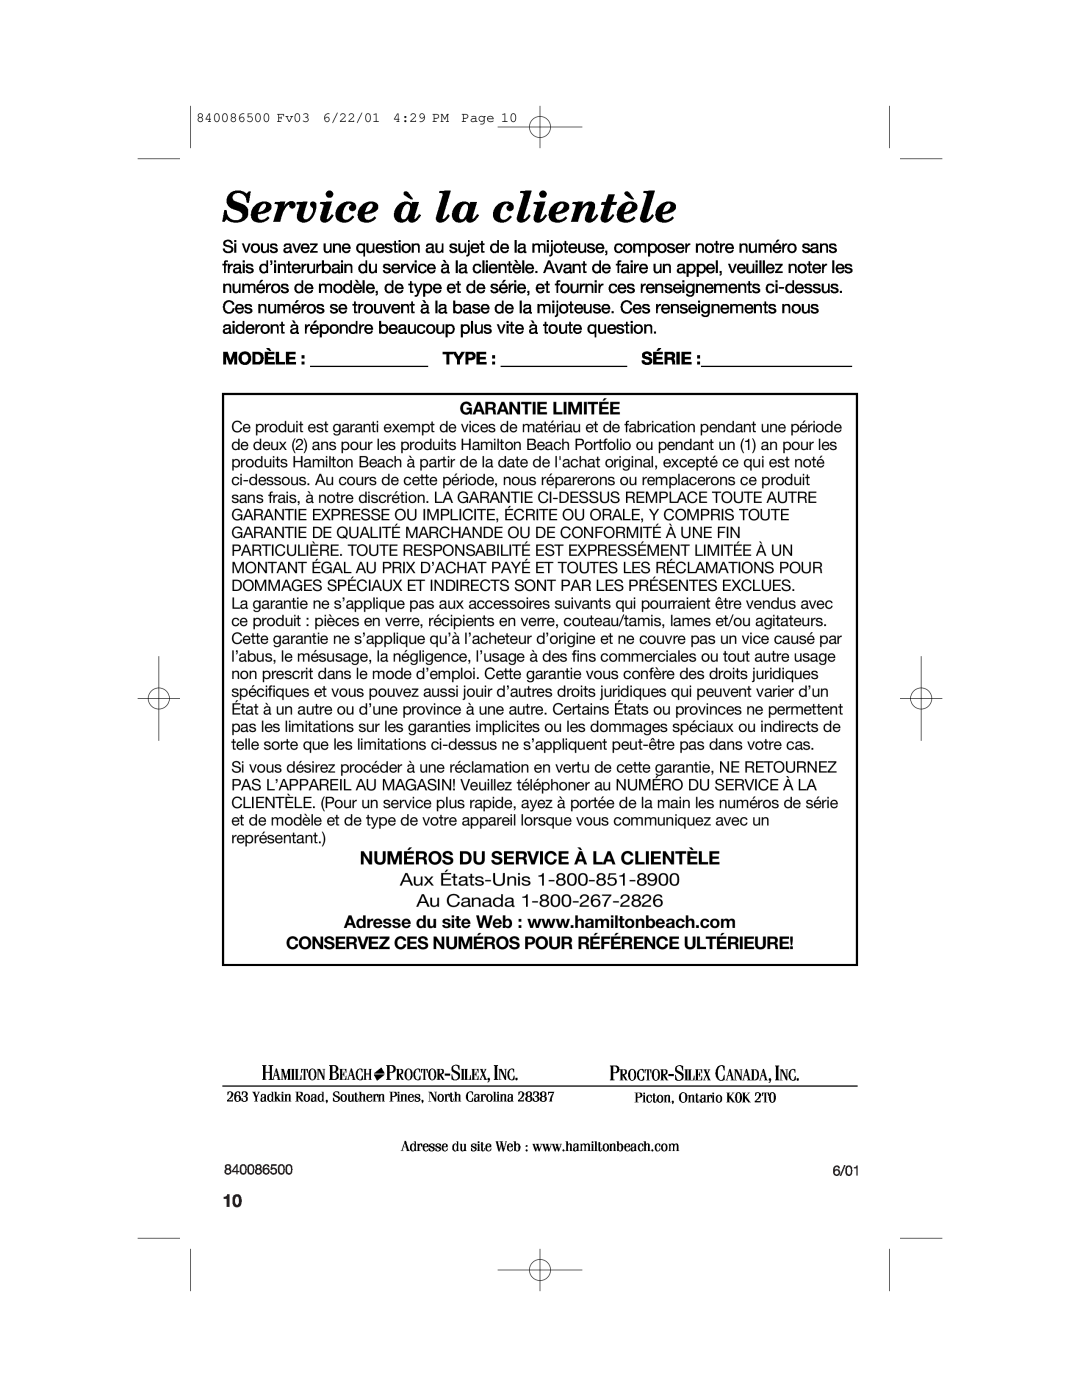 Hamilton Beach 33158 manual Service à la clientèle, Numéros Du Service À La Clientèle, Modèle Type Série Garantie Limitée 